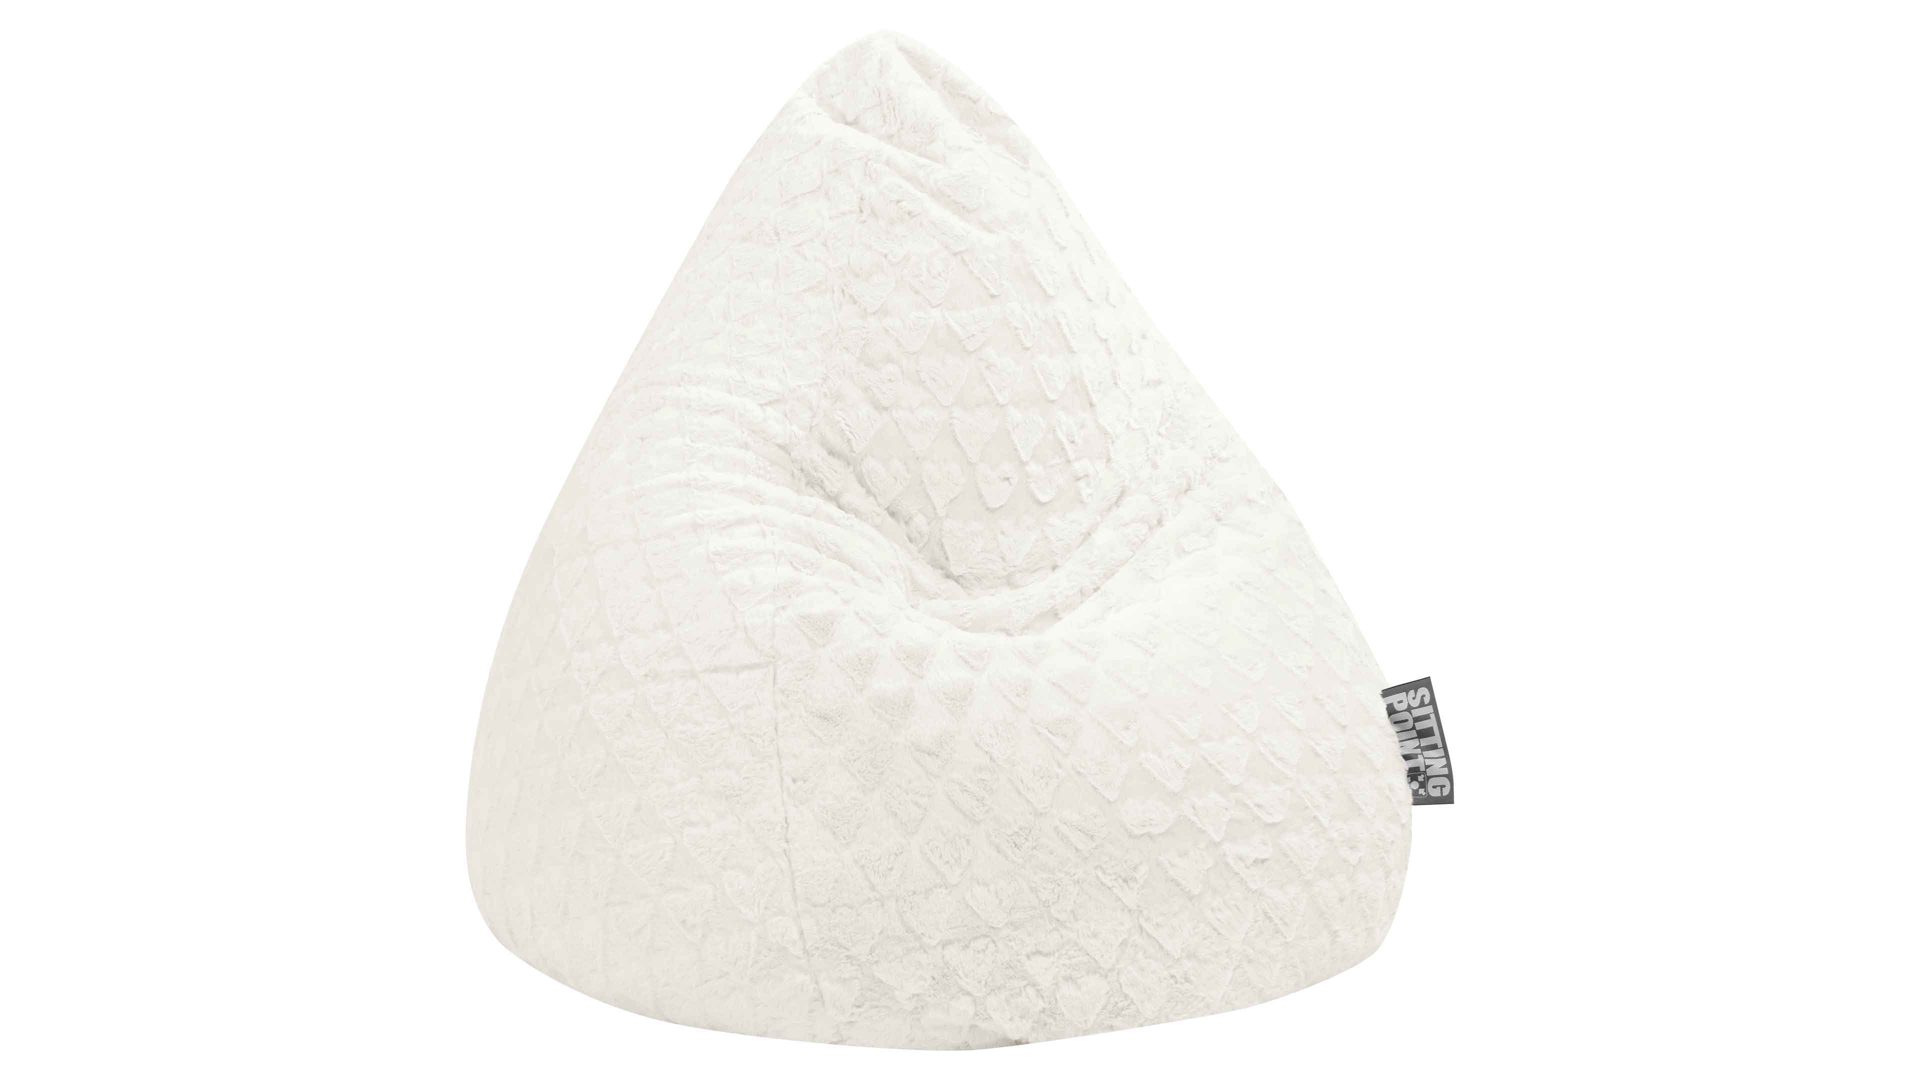 Standard-Sitzsack Magma sitting point aus Kunstfaser in Weiß SITTING POINT Plüsch-Sitzsack Fluffy Hearts L als Sitzmöbel weißer Plüschbezug - ca. 120 Liter